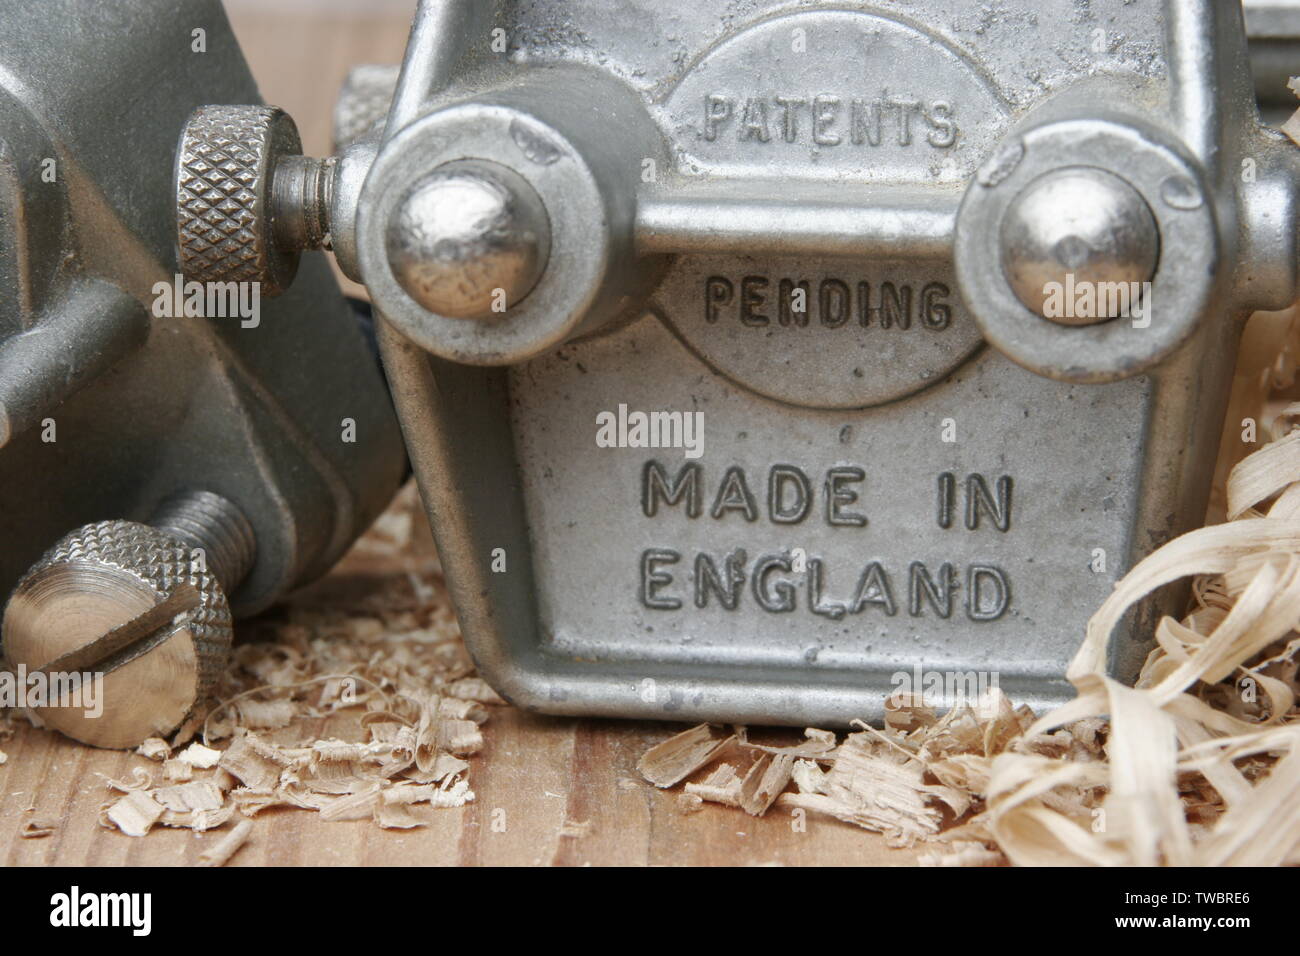 Herramienta de carpintería de fabricación británica de espigas (calibre) con grabado de 'made in England' y 'patentes pendientes' Foto de stock